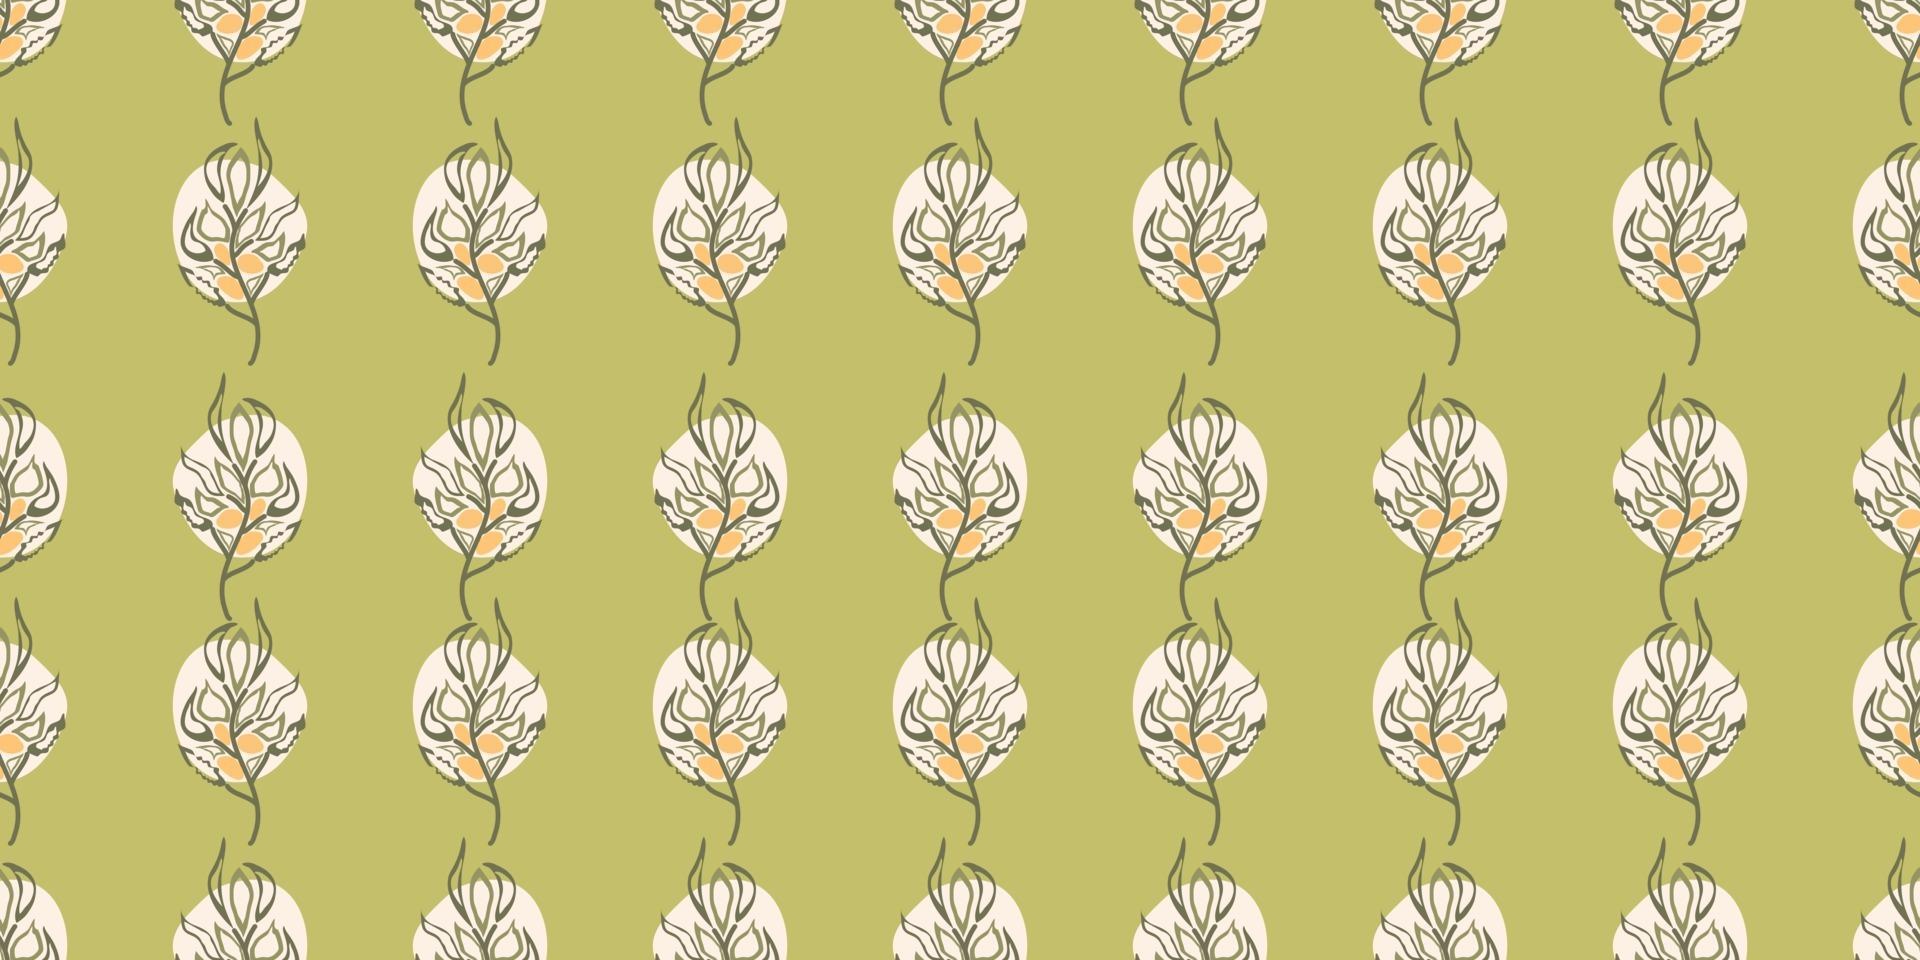 niedliche Blumen, Pflanzen Vektor nahtlose Muster. elegante Vorlage für Modedrucke, Stoffe, Textilien, Tapeten, Wandkunst, Einladung, Verpackung. einsatzbereit